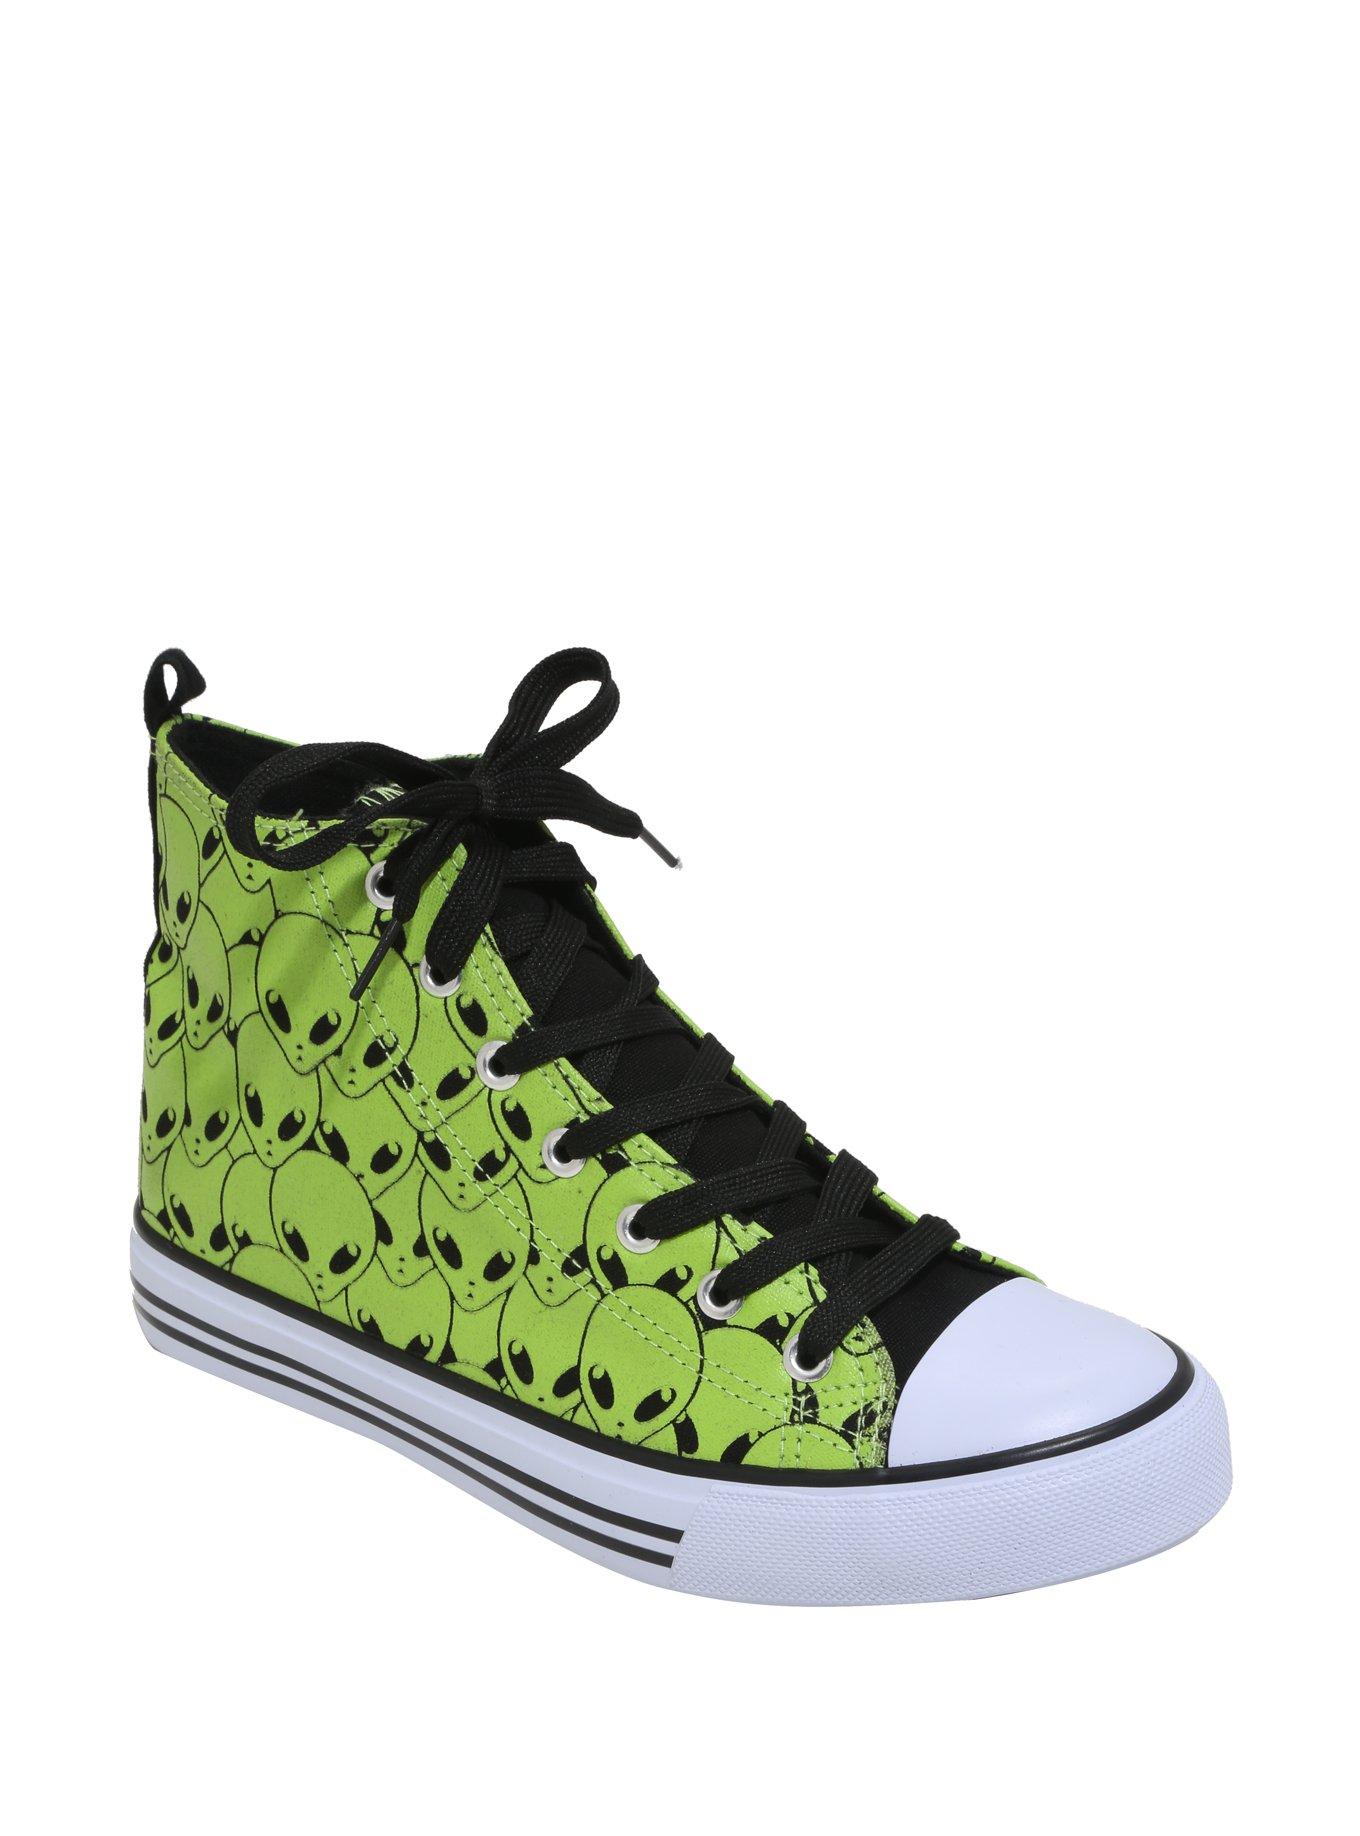 Green Alien Hi-Top Sneakers, GREEN, hi-res